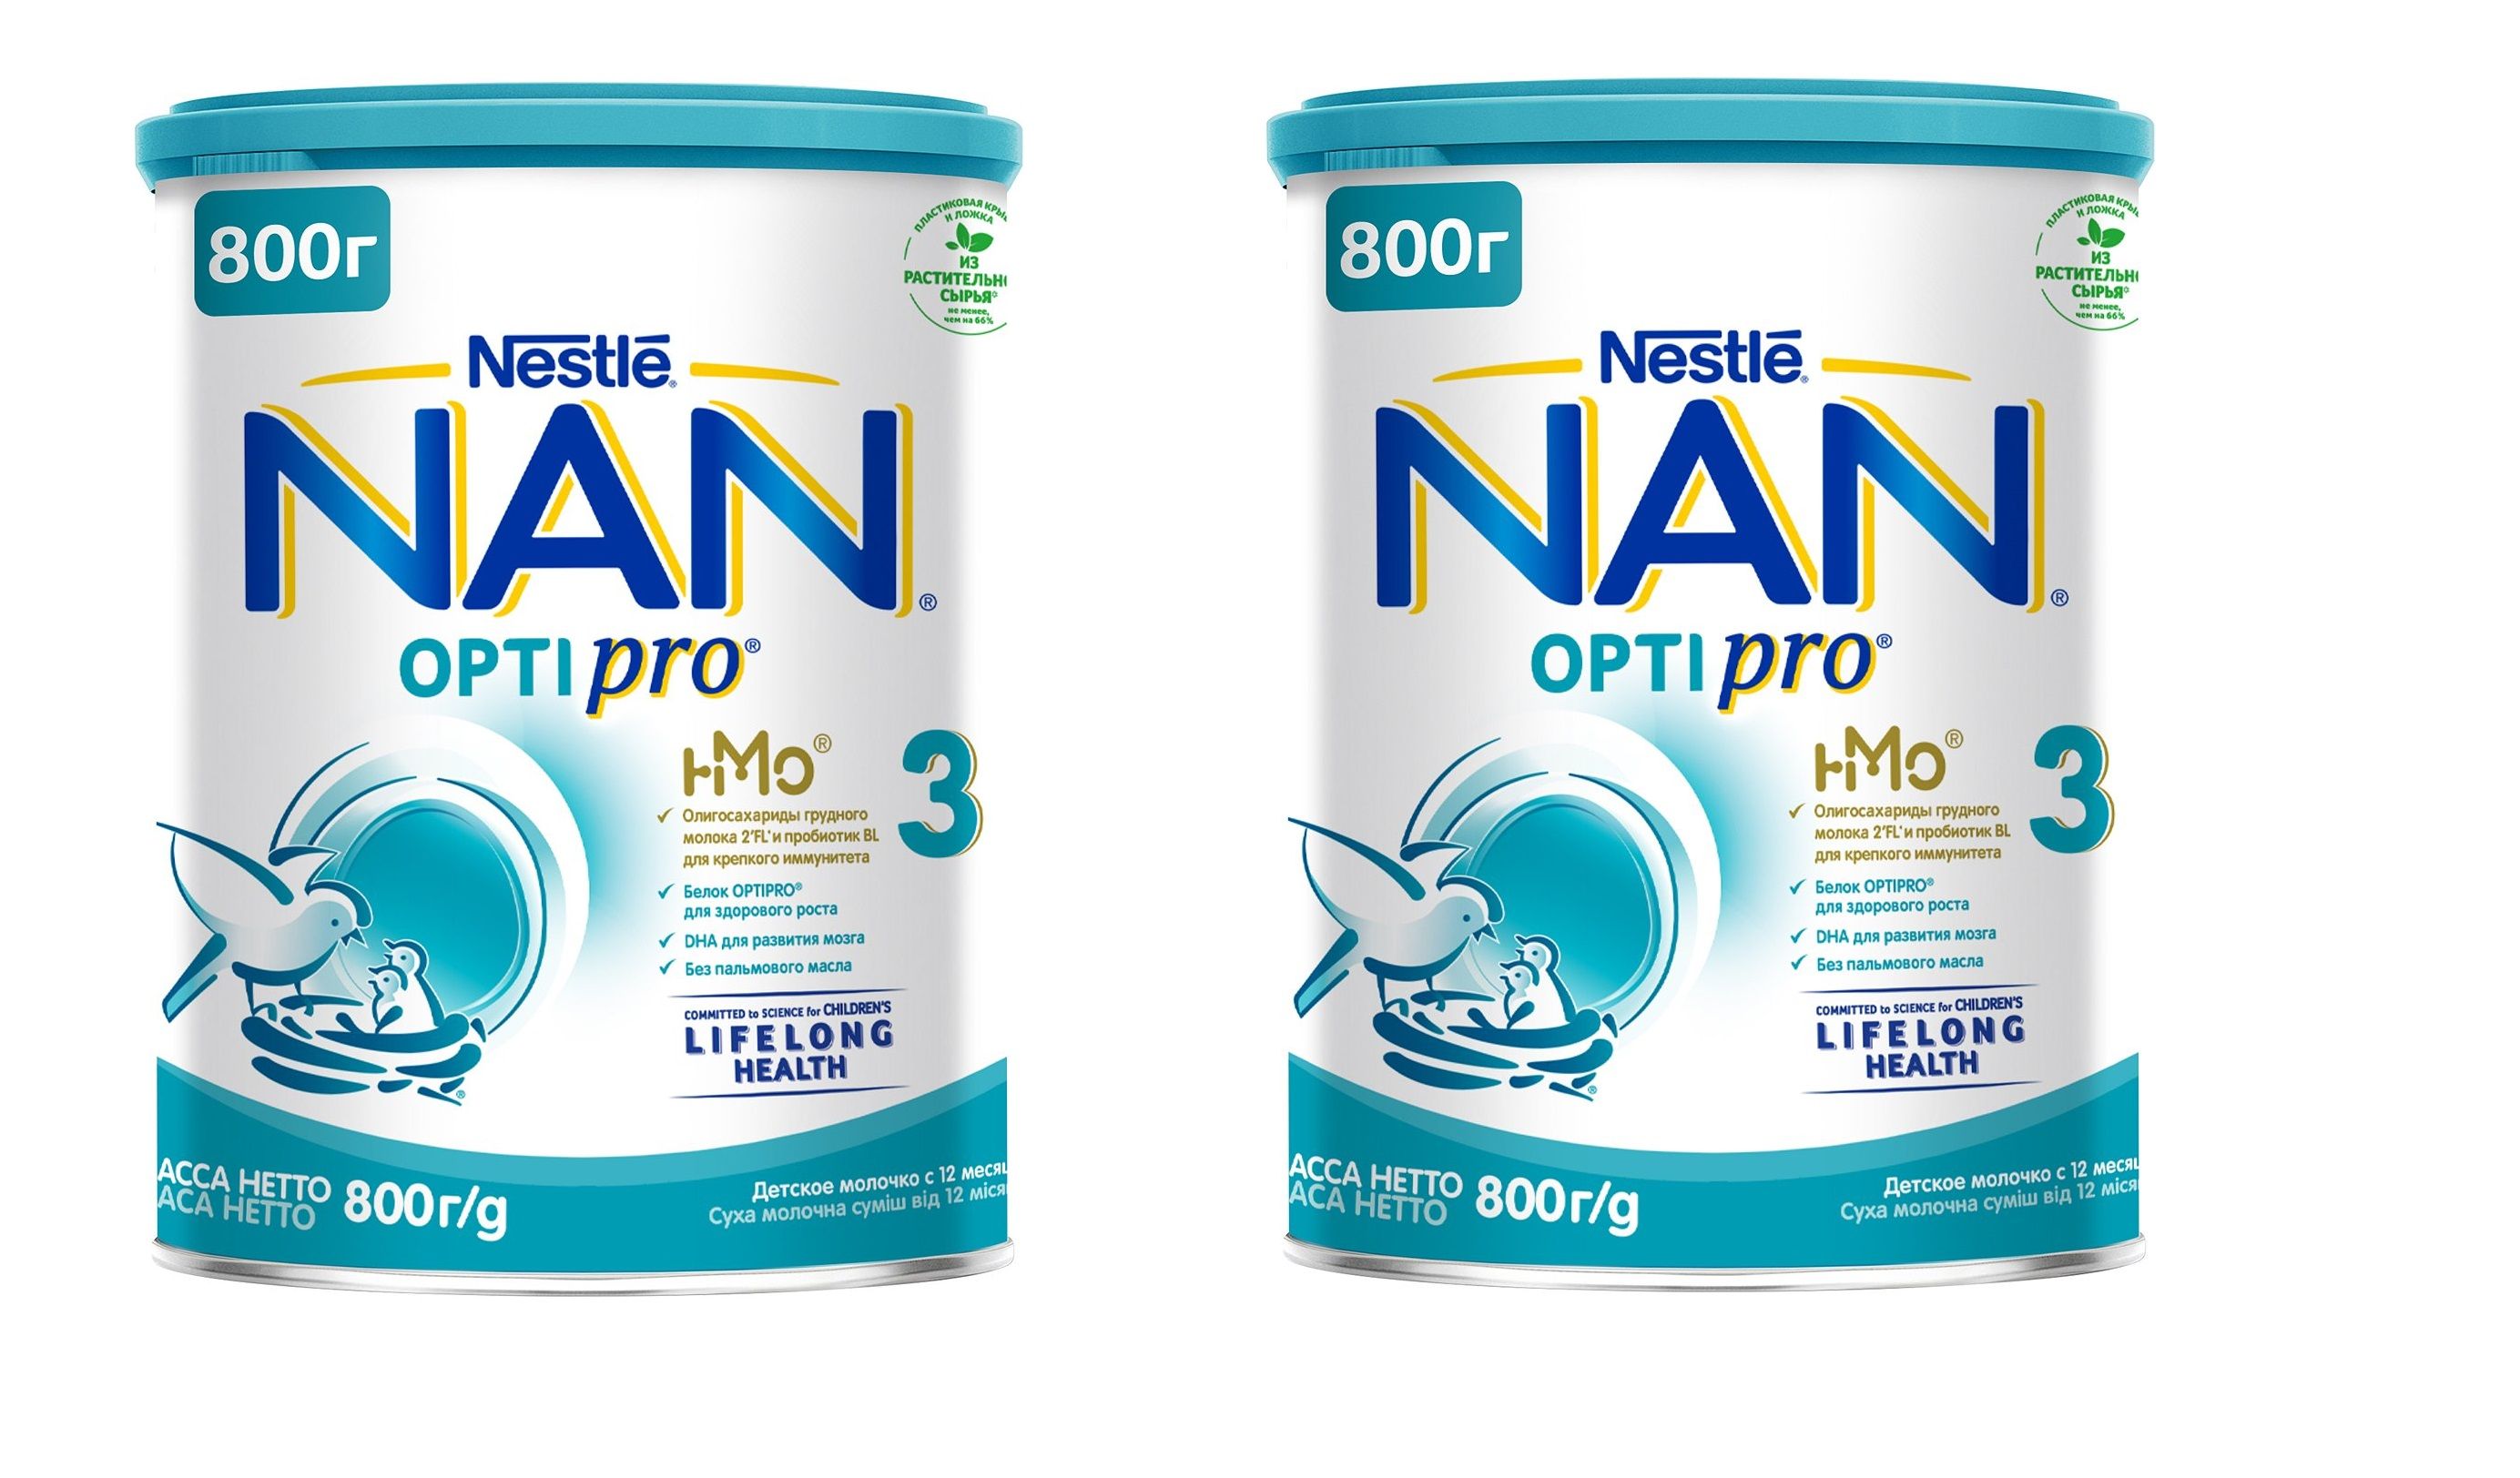 Нан 4. Nestle nan Optipro 1. Nan Optipro 4 800 гр. Nan Optipro 1 800 гр. Nan 6 Optipro.